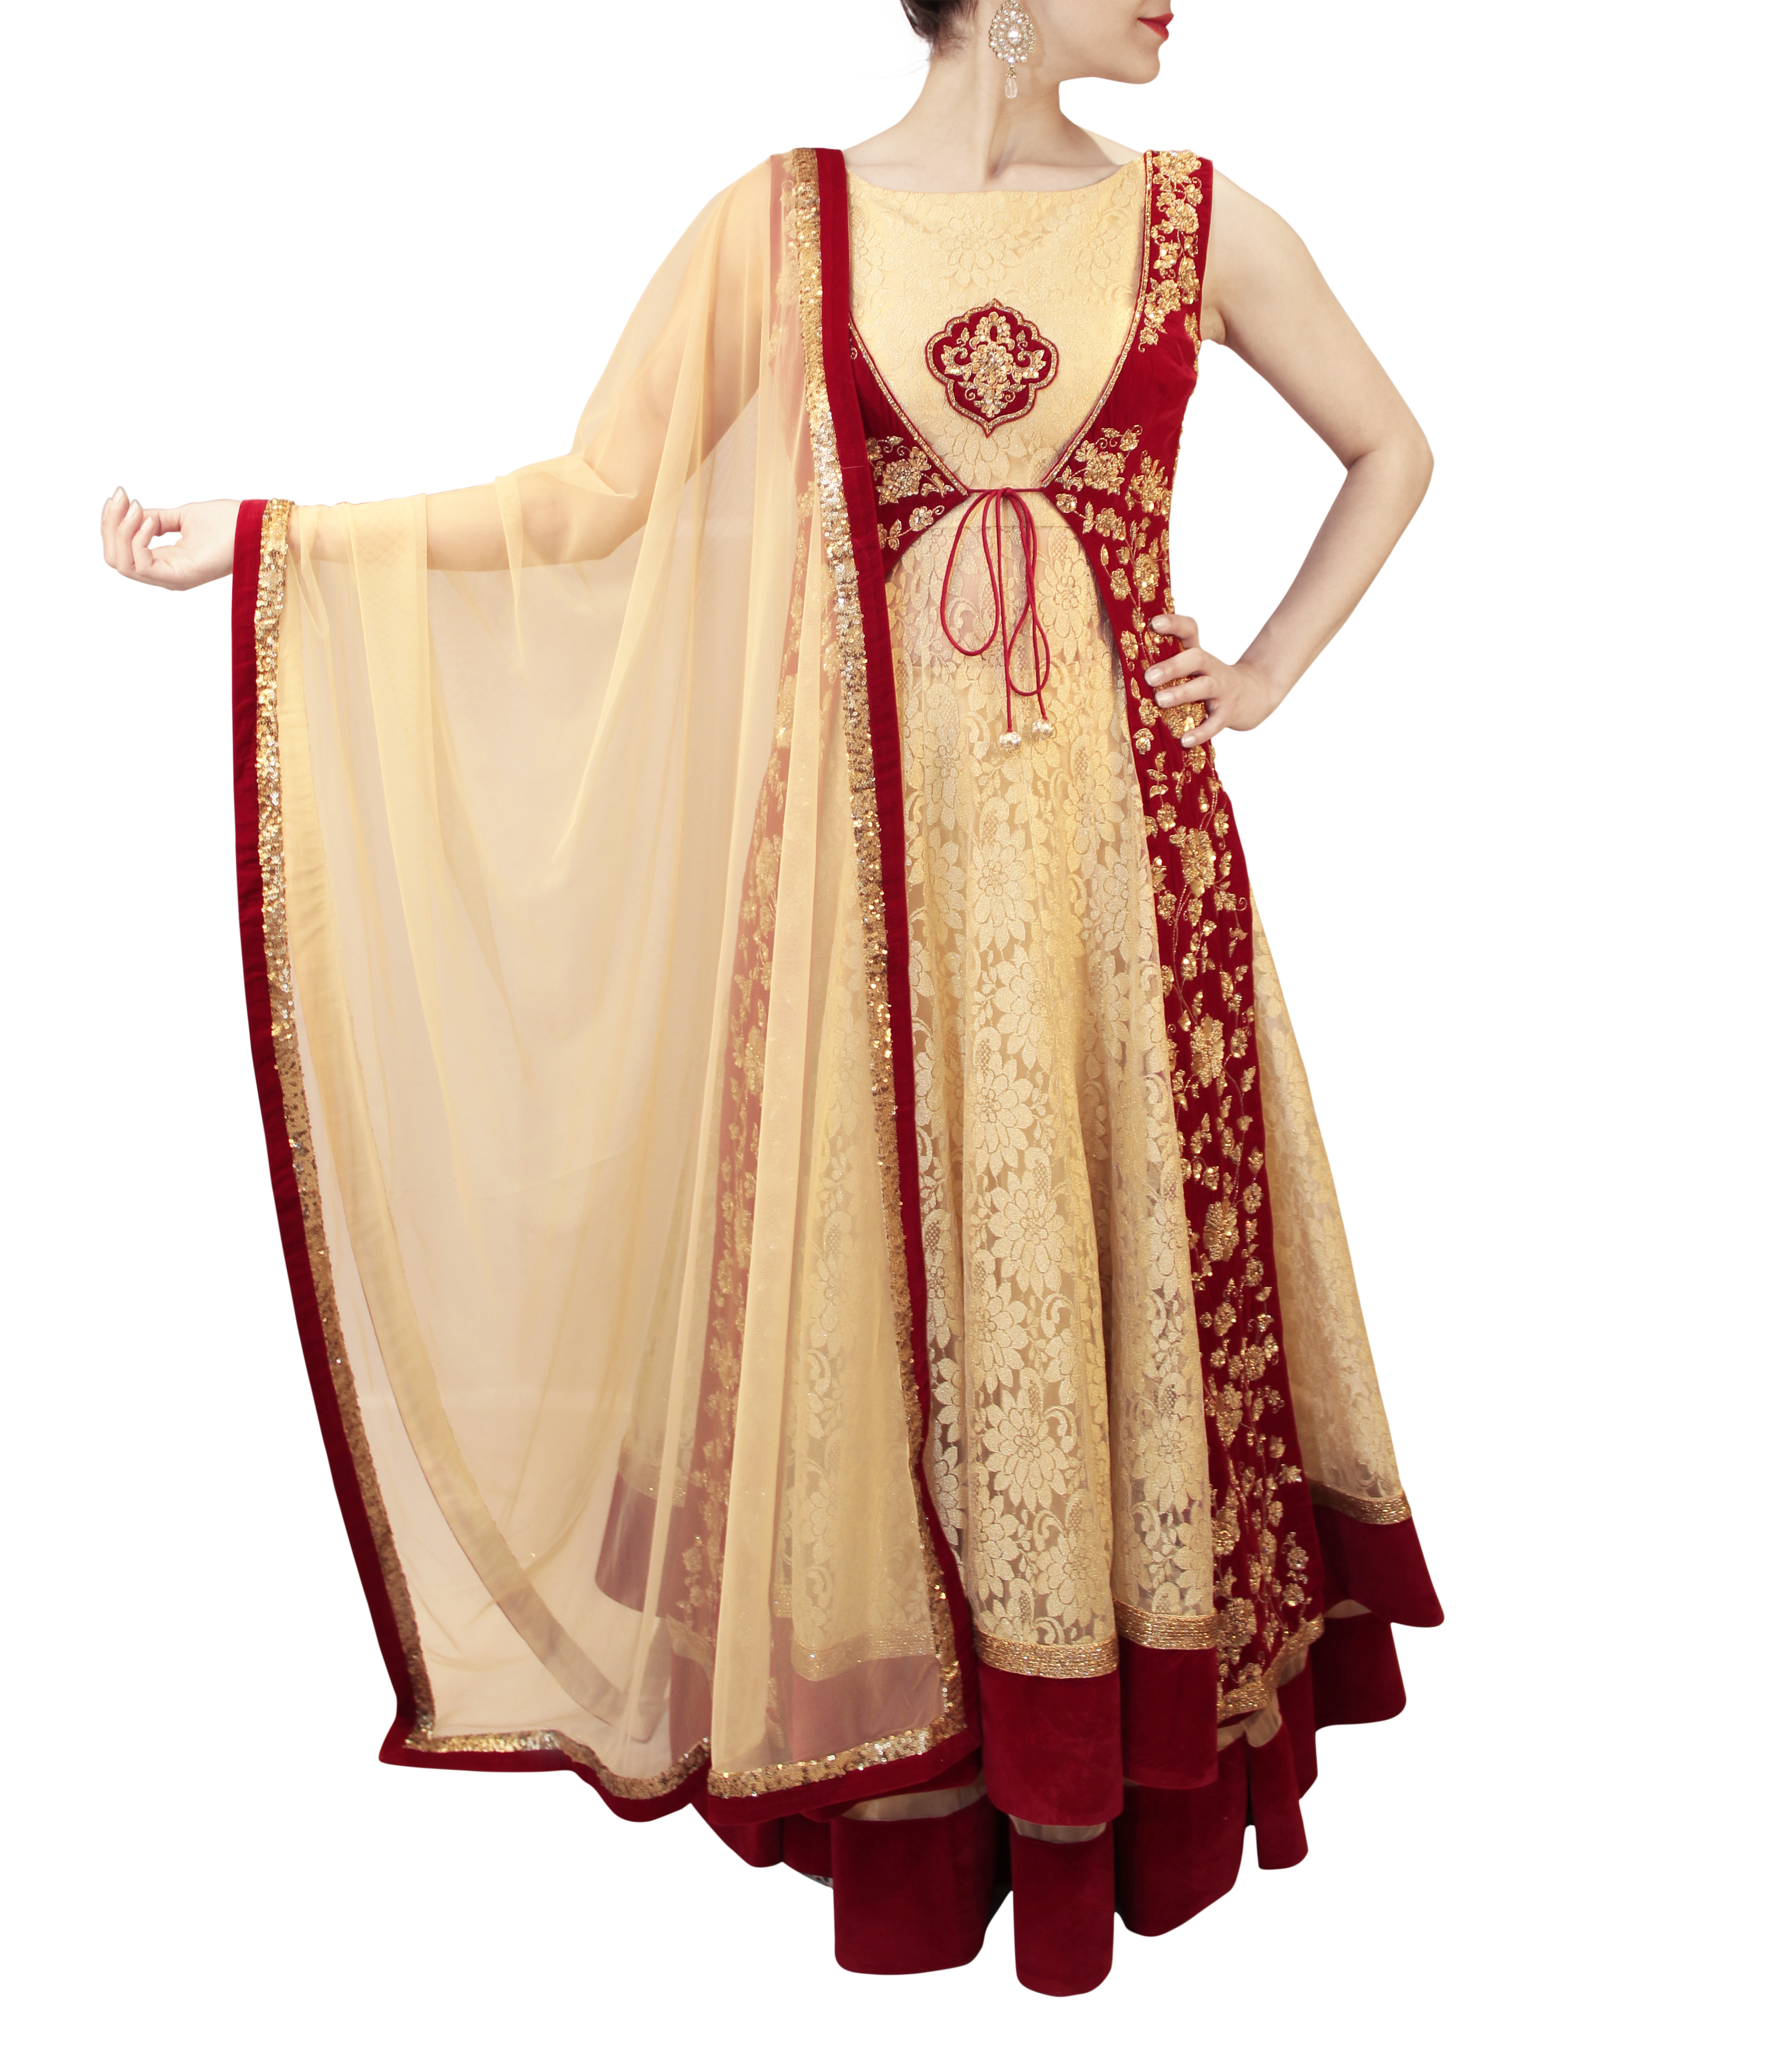 Purple Lacha Suit Lengha Choli Lehenga Long Top Lehanga Indian Sari Saree  Dress | eBay